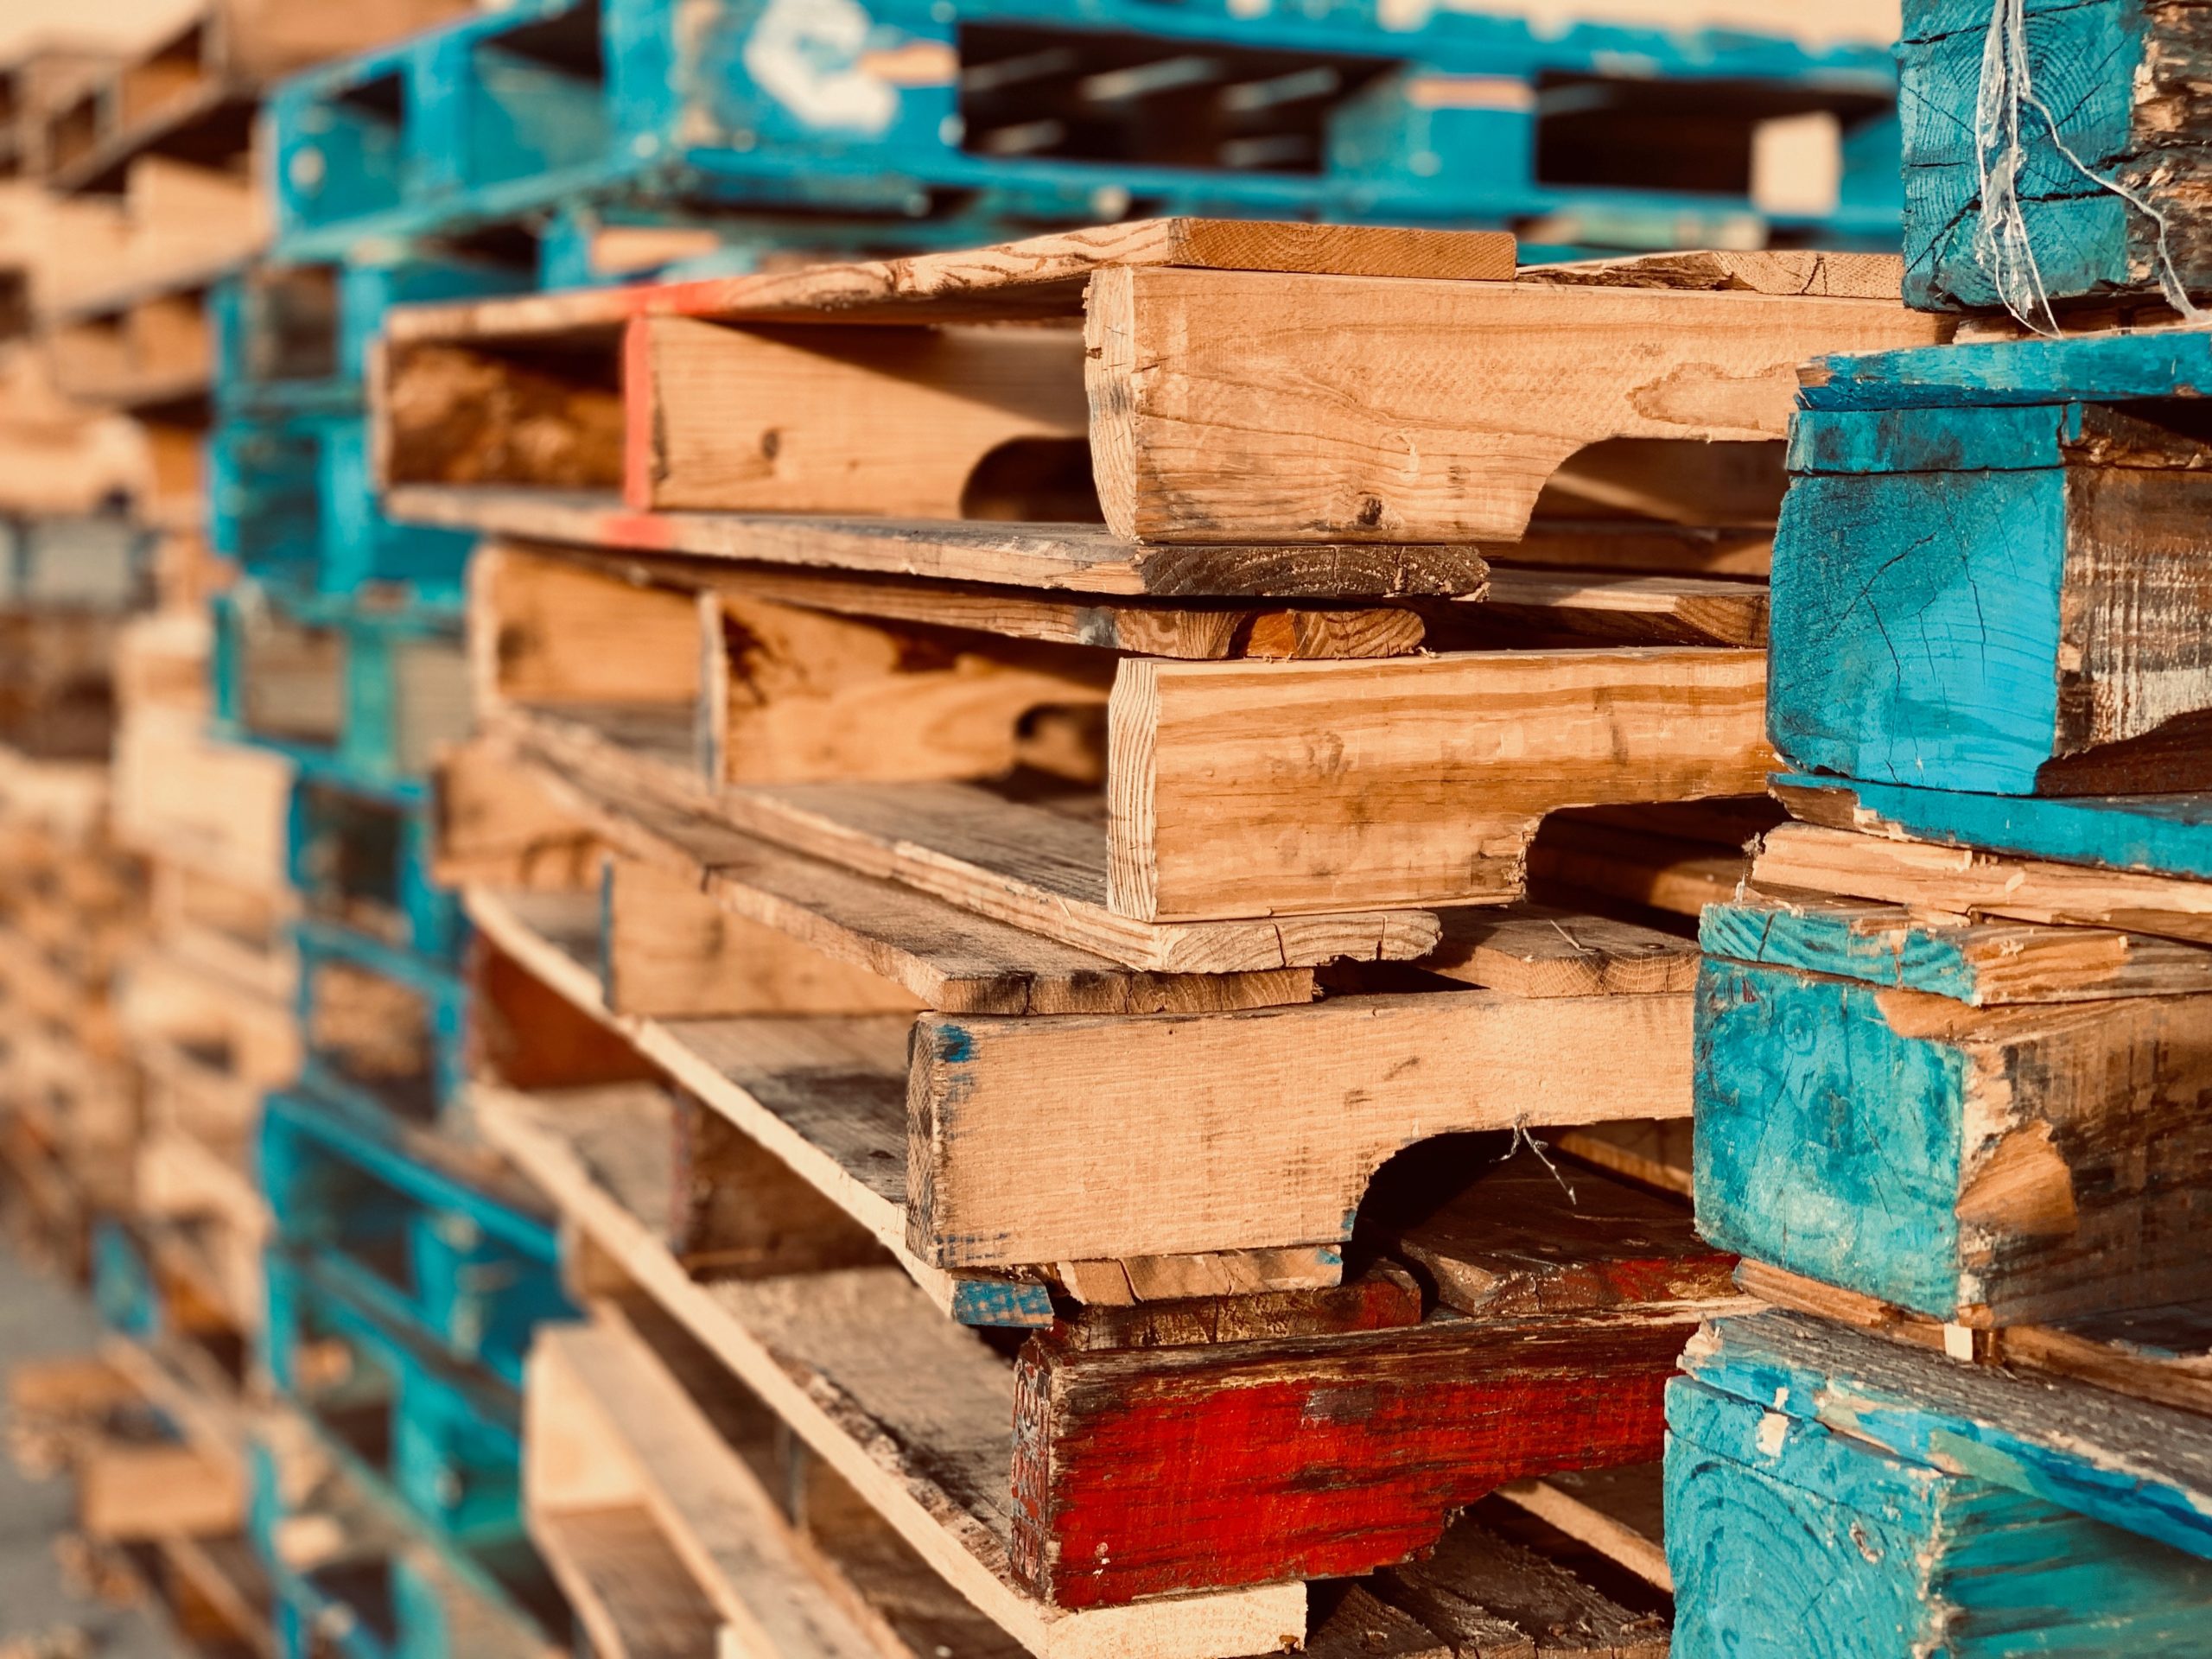 Requisitos fitosanitarios para la importación o entrada de embalajes y estibas de madera en la comunidad autónoma de Canarias.